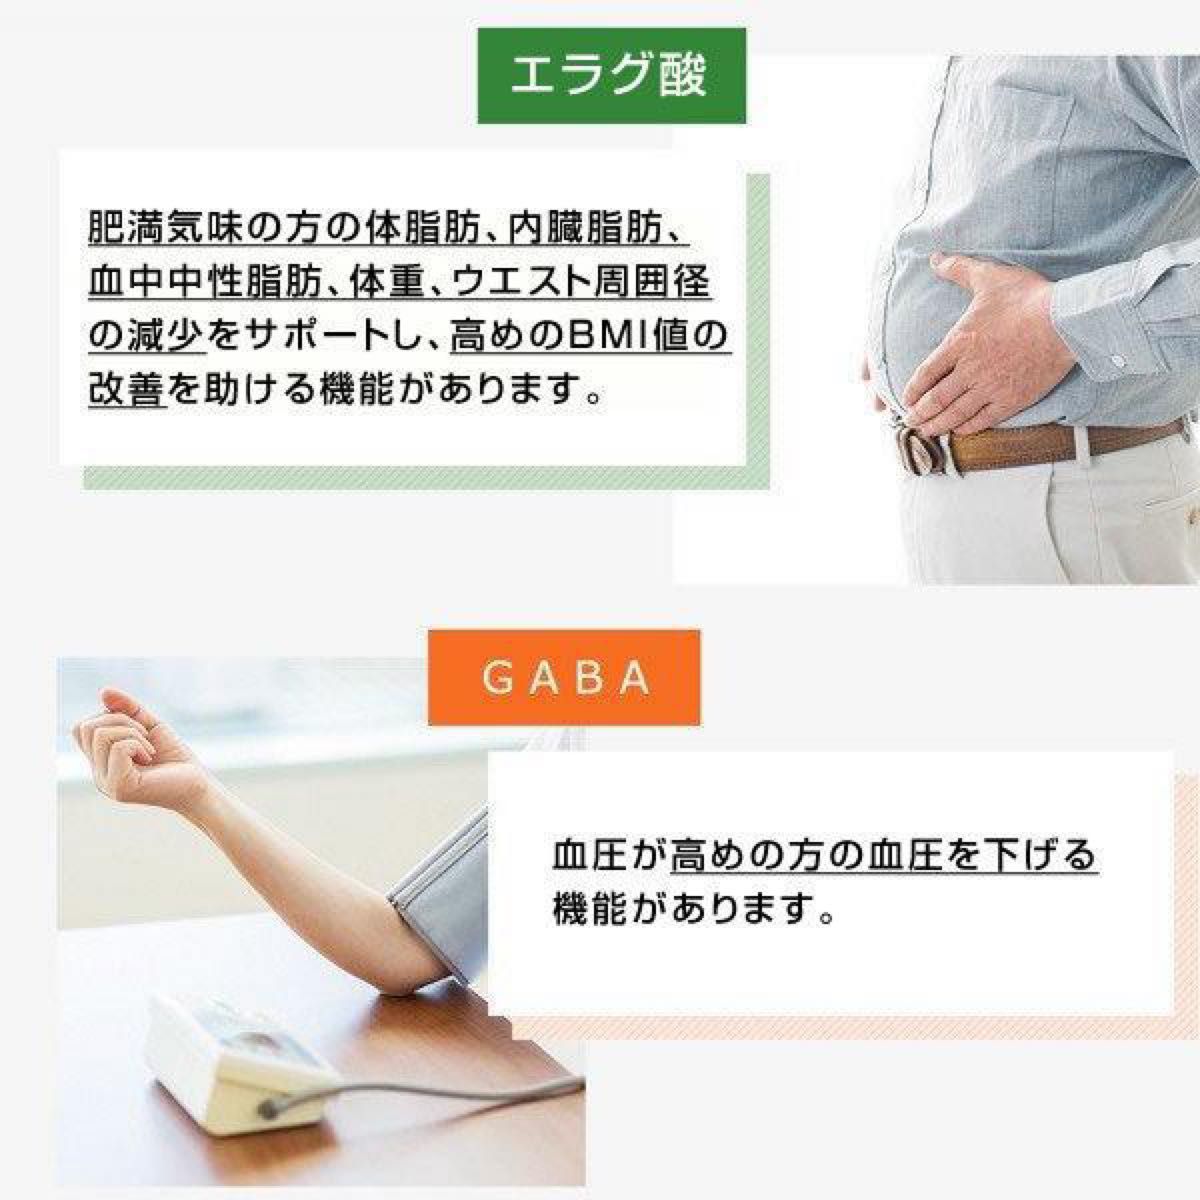 【新品未開封】 Ｗの健康青汁 新日本製薬 機能性表示食品 青汁 2箱 正規品 体脂肪 中性脂肪 血圧 GABA フラグ酸 乳酸菌